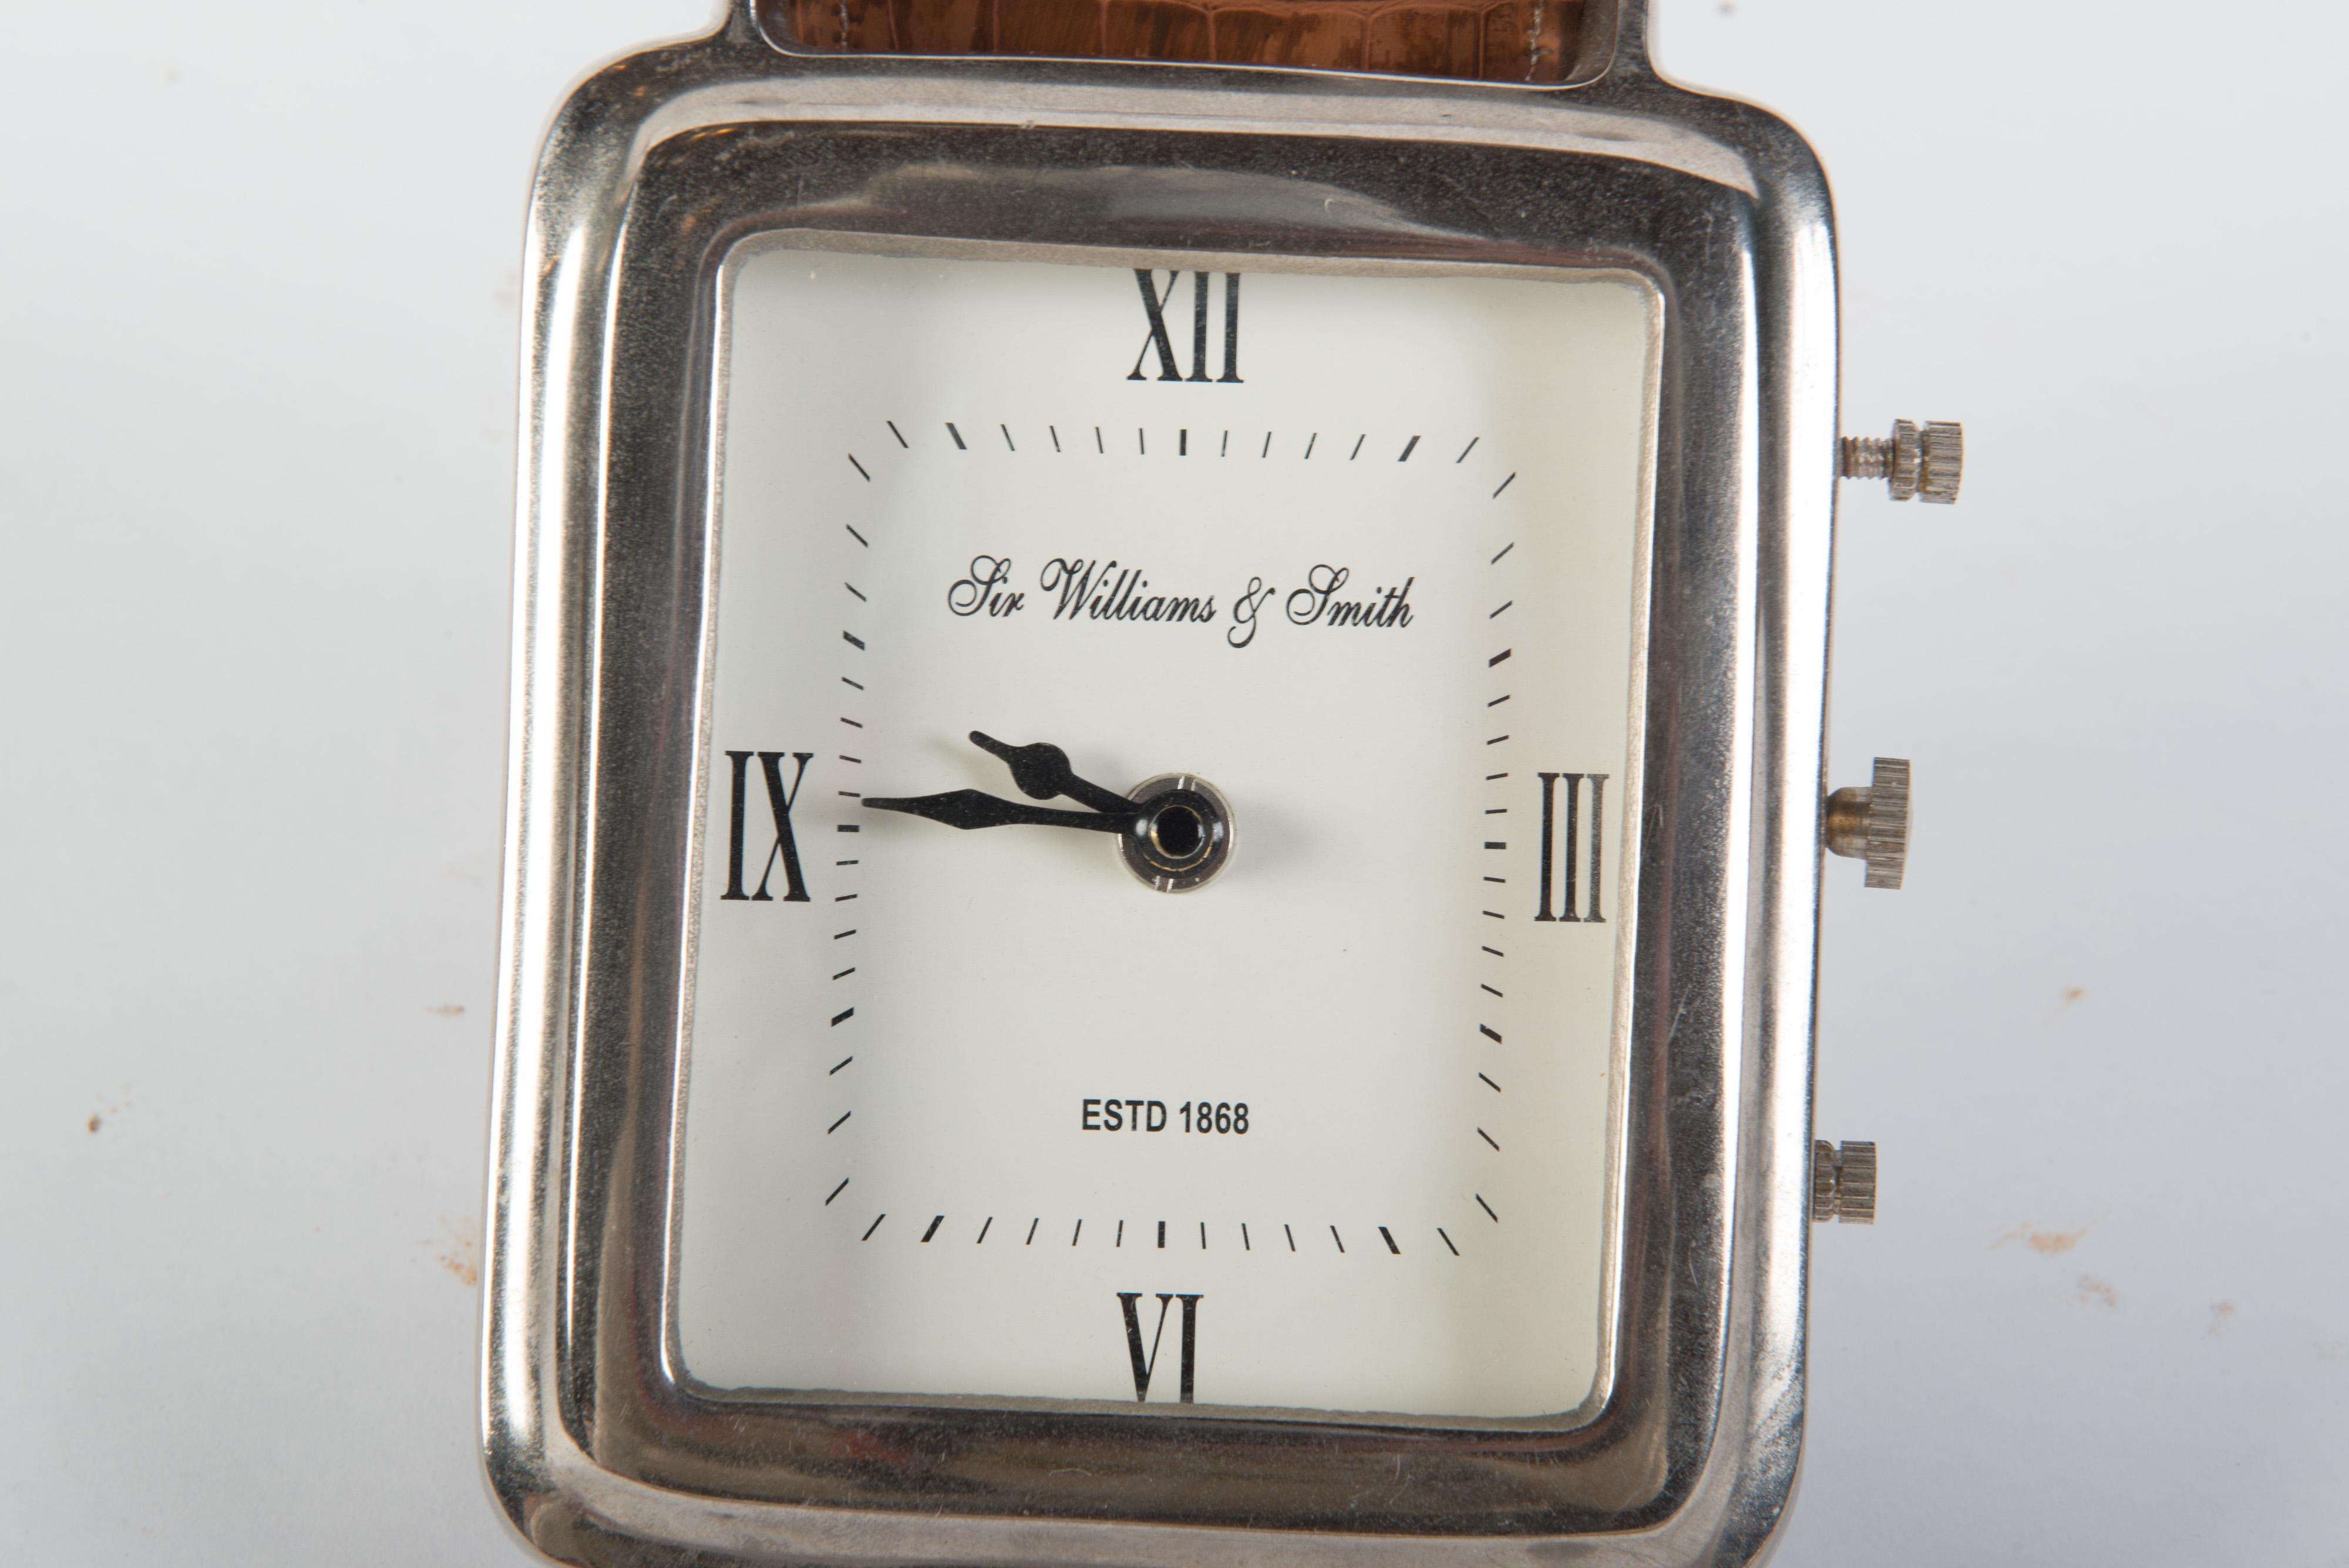 Horloge de bureau avec montre-bracelet de présentation du magasin Sir Williams & Smith, avec bracelets en cuir. Le cadran de l'horloge mesure 5 pouces sur 6 pouces de haut. Une petite pièce en métal permet de relever la montre à un angle. Fonctionne